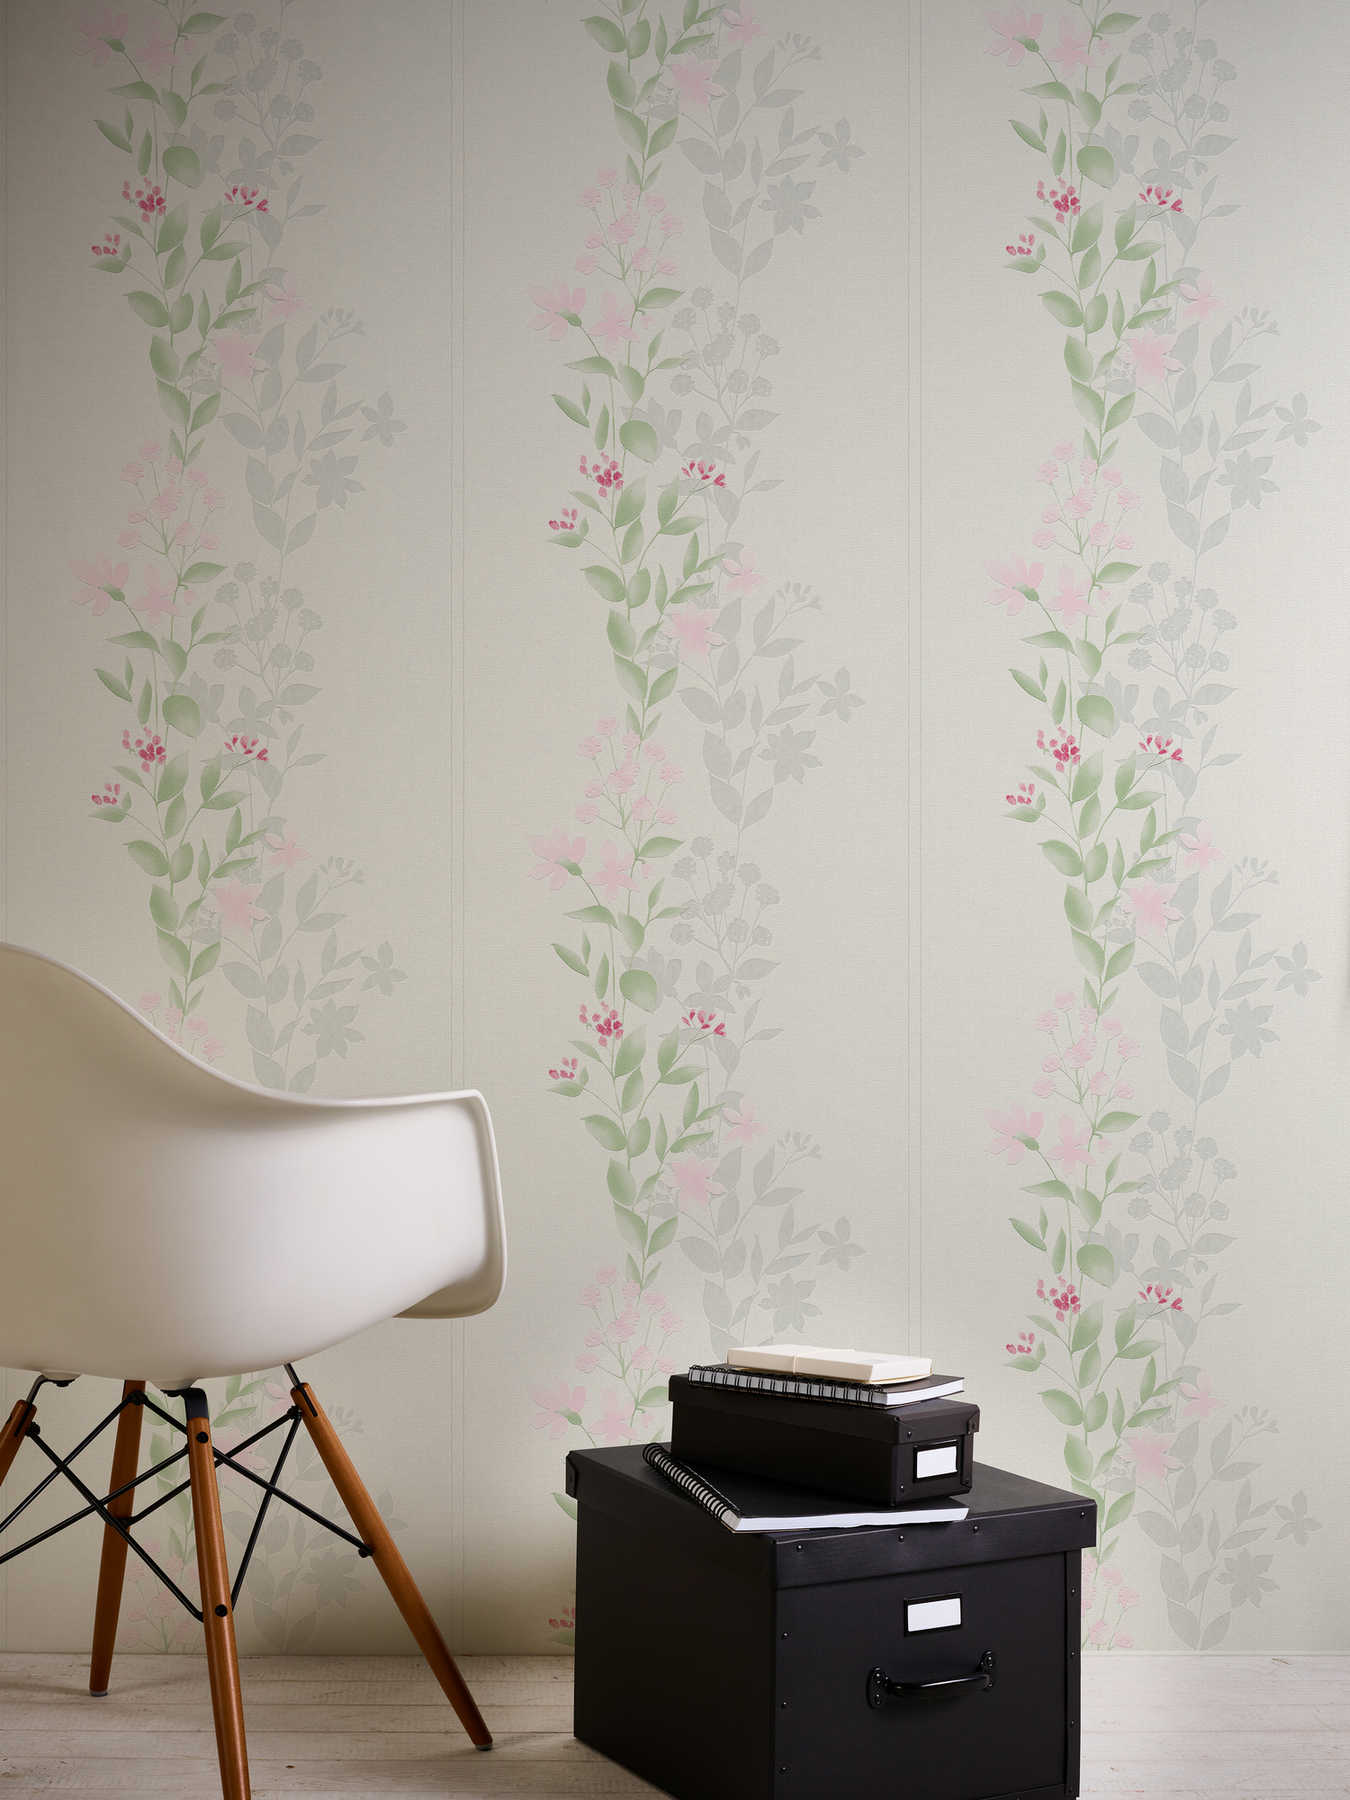             behang bloemmotief, aquareleffect - grijs, groen, roze
        